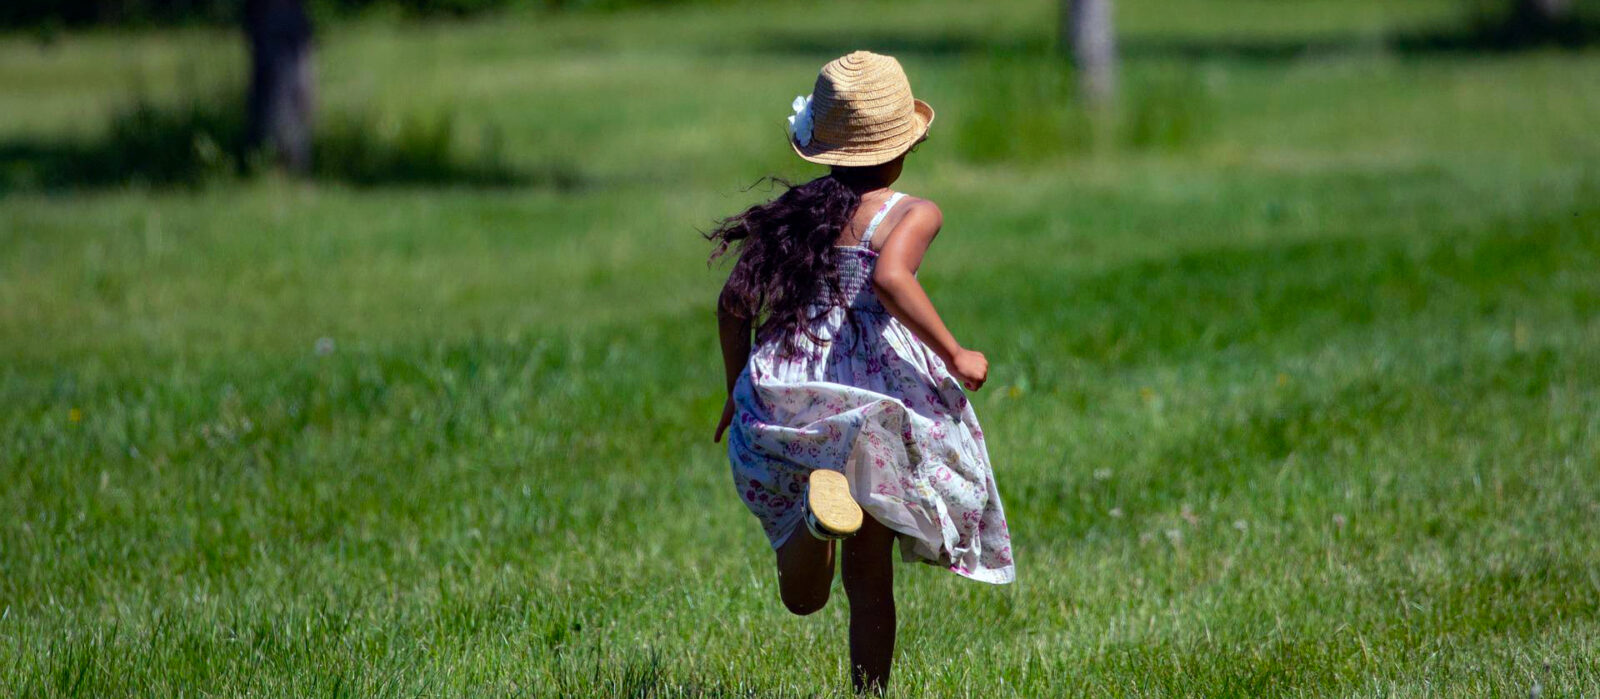 Child running in grass